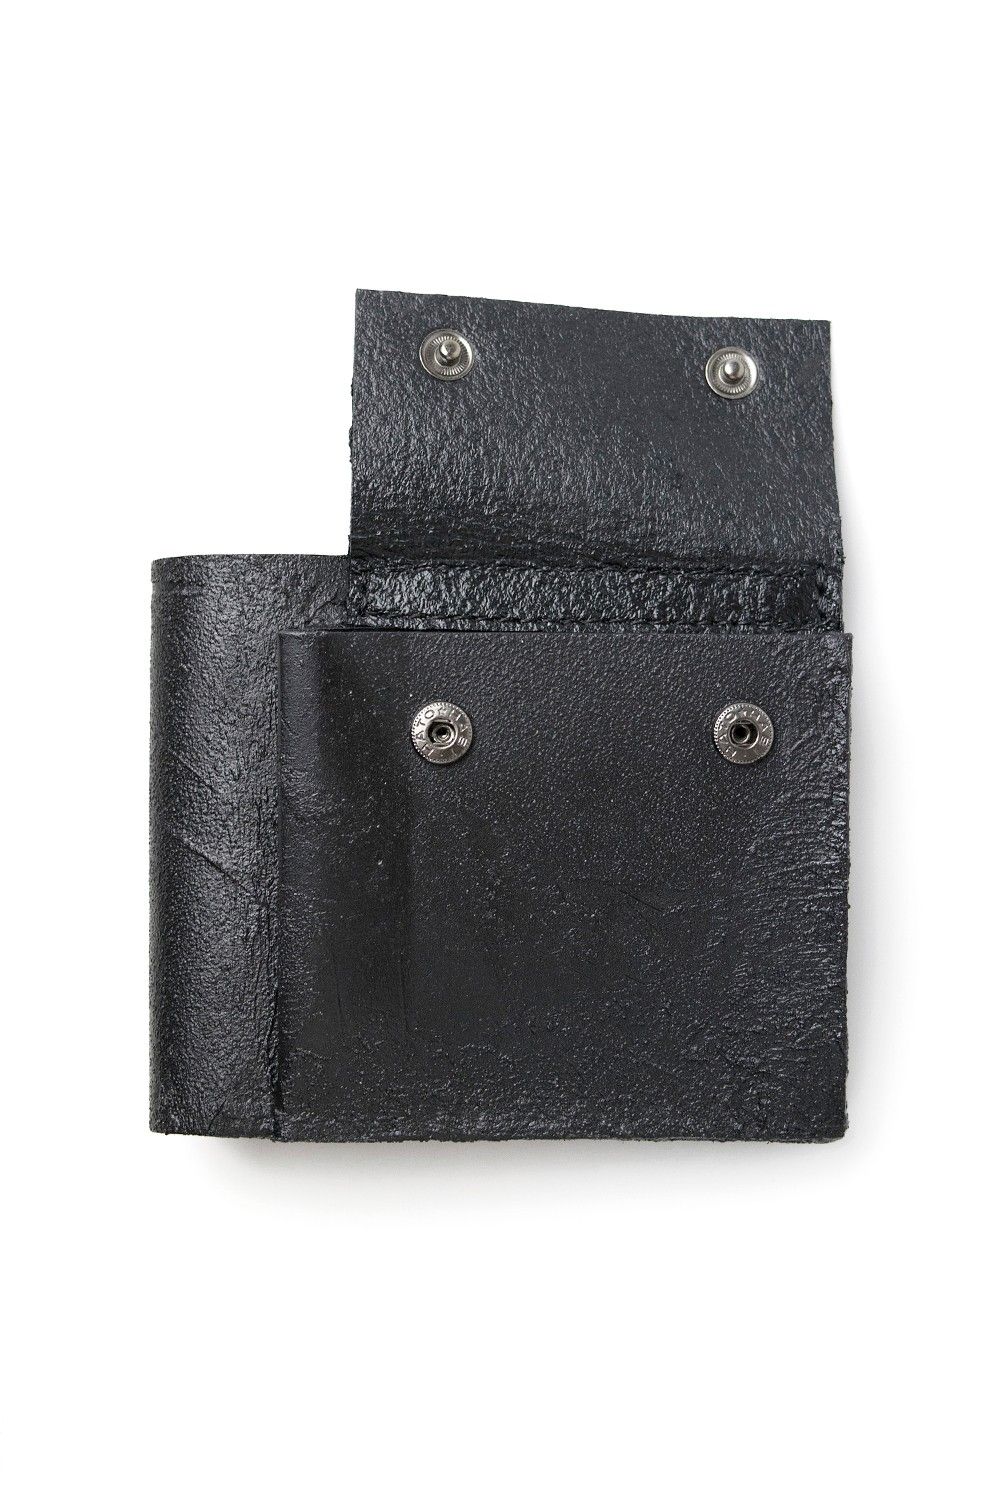 KAGARI YUSUKE - 二つ折り財布 [黒い壁] / mw06-bk | BONITA